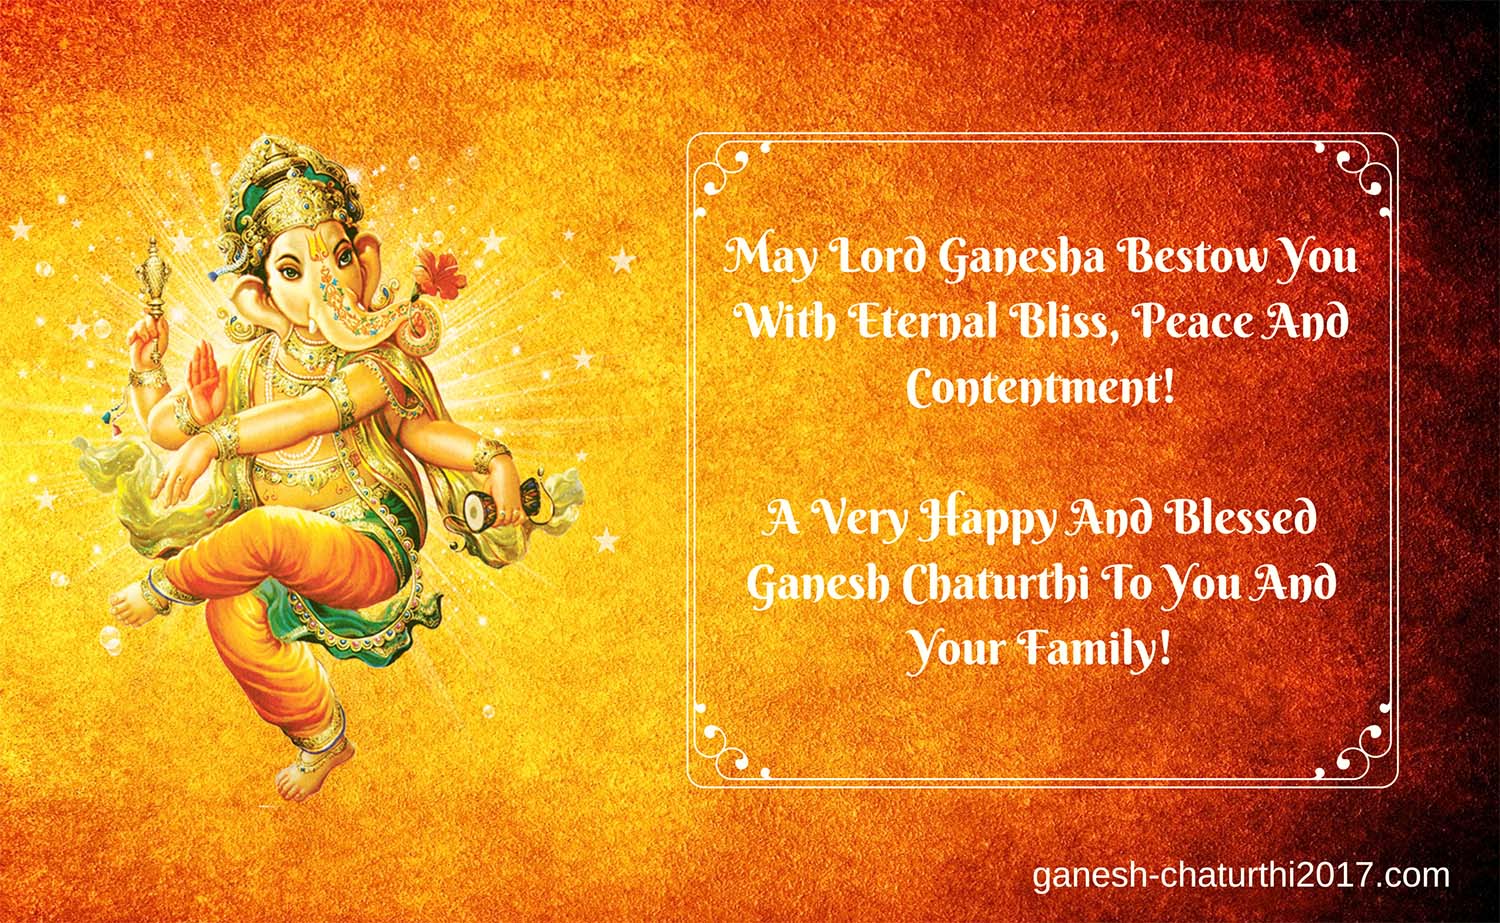 Ganesh Chathurthi wishes